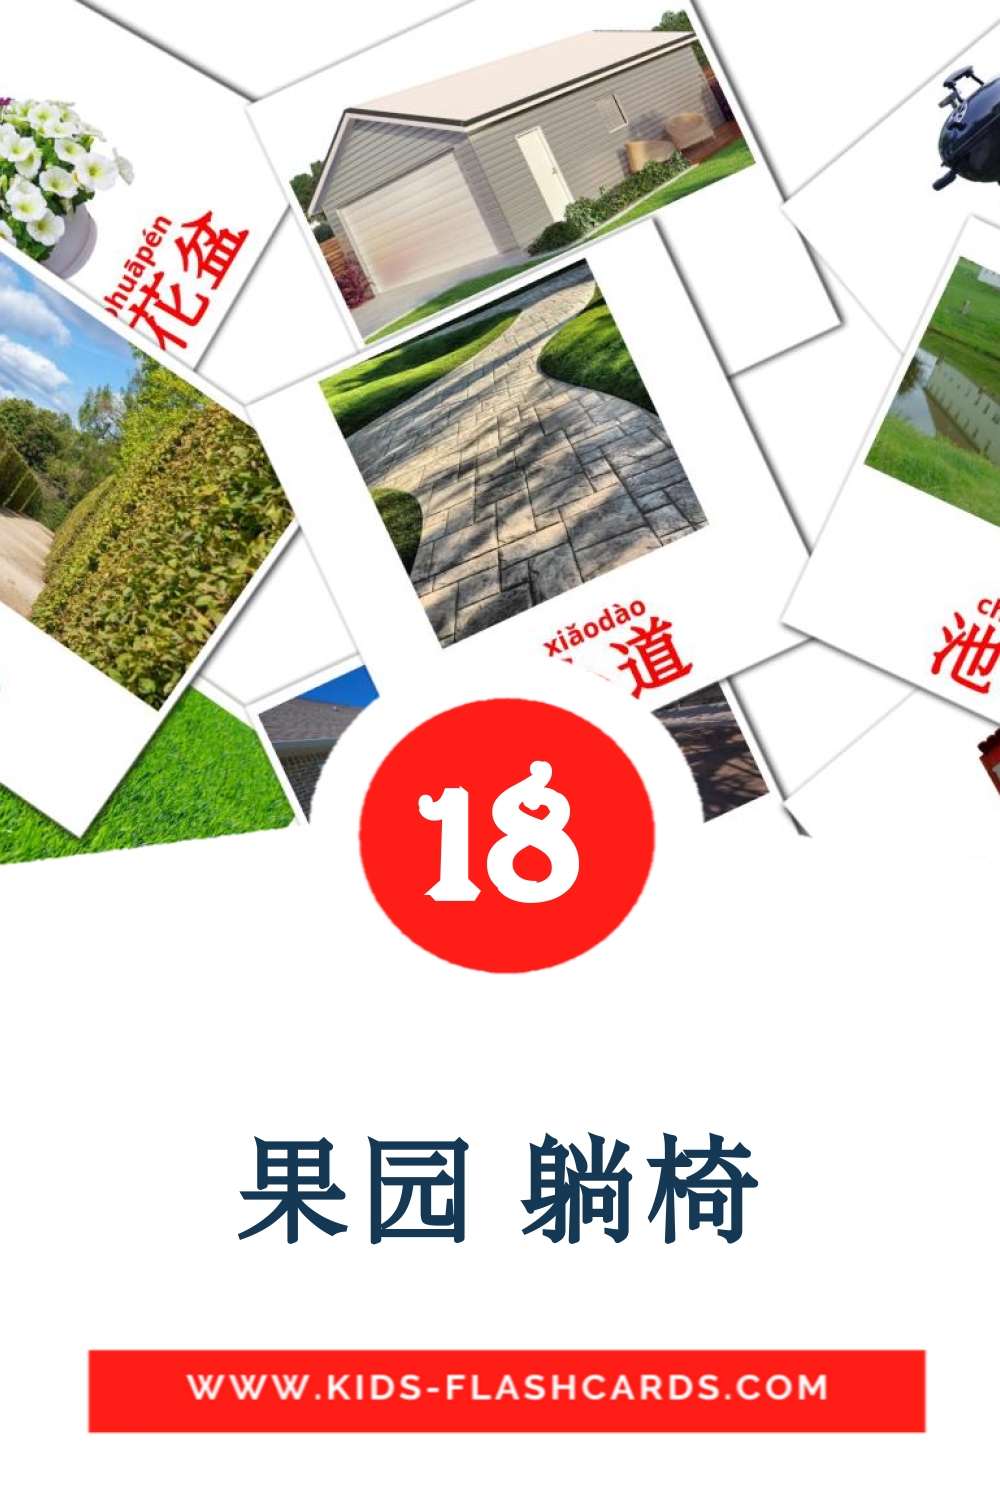 18 tarjetas didacticas de 果园 躺椅 para el jardín de infancia en chino(simplificado)